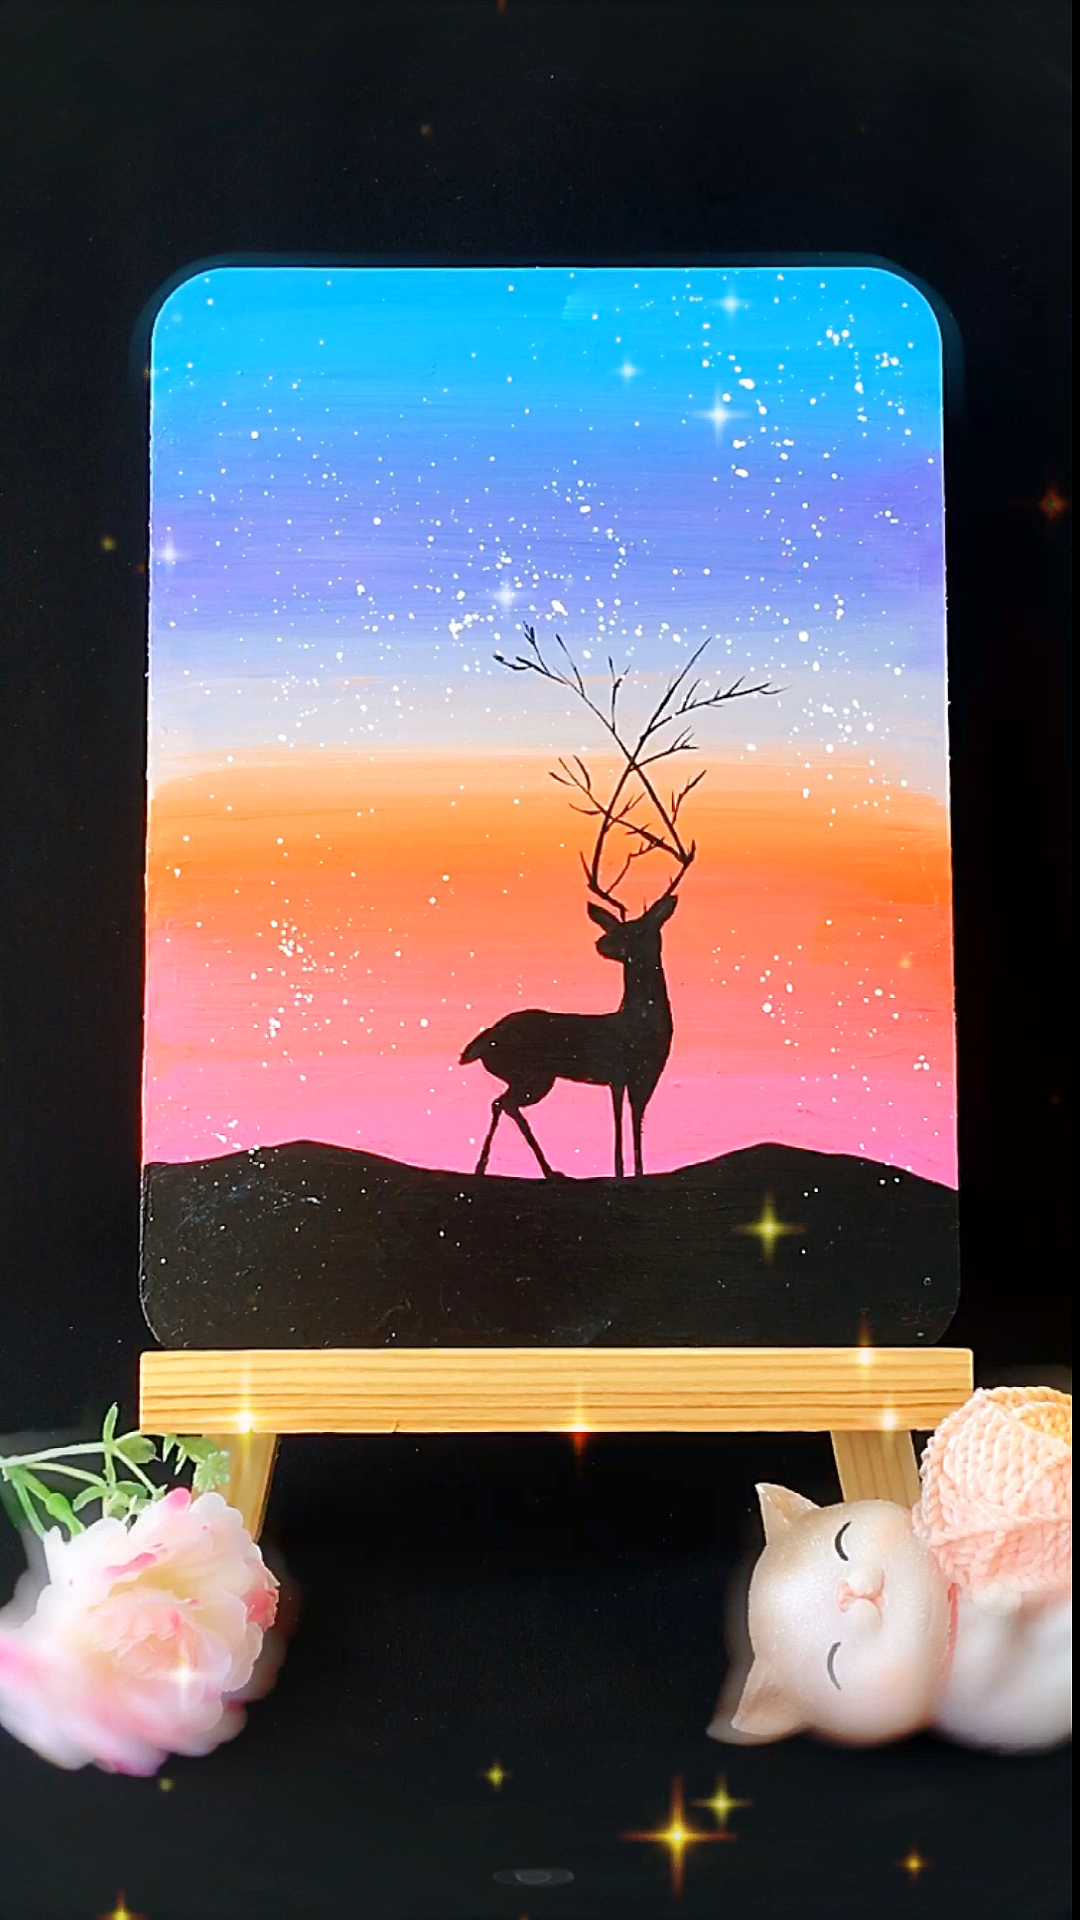 绘画两种不同风格的鹿简笔画鹿vs星空画麋鹿